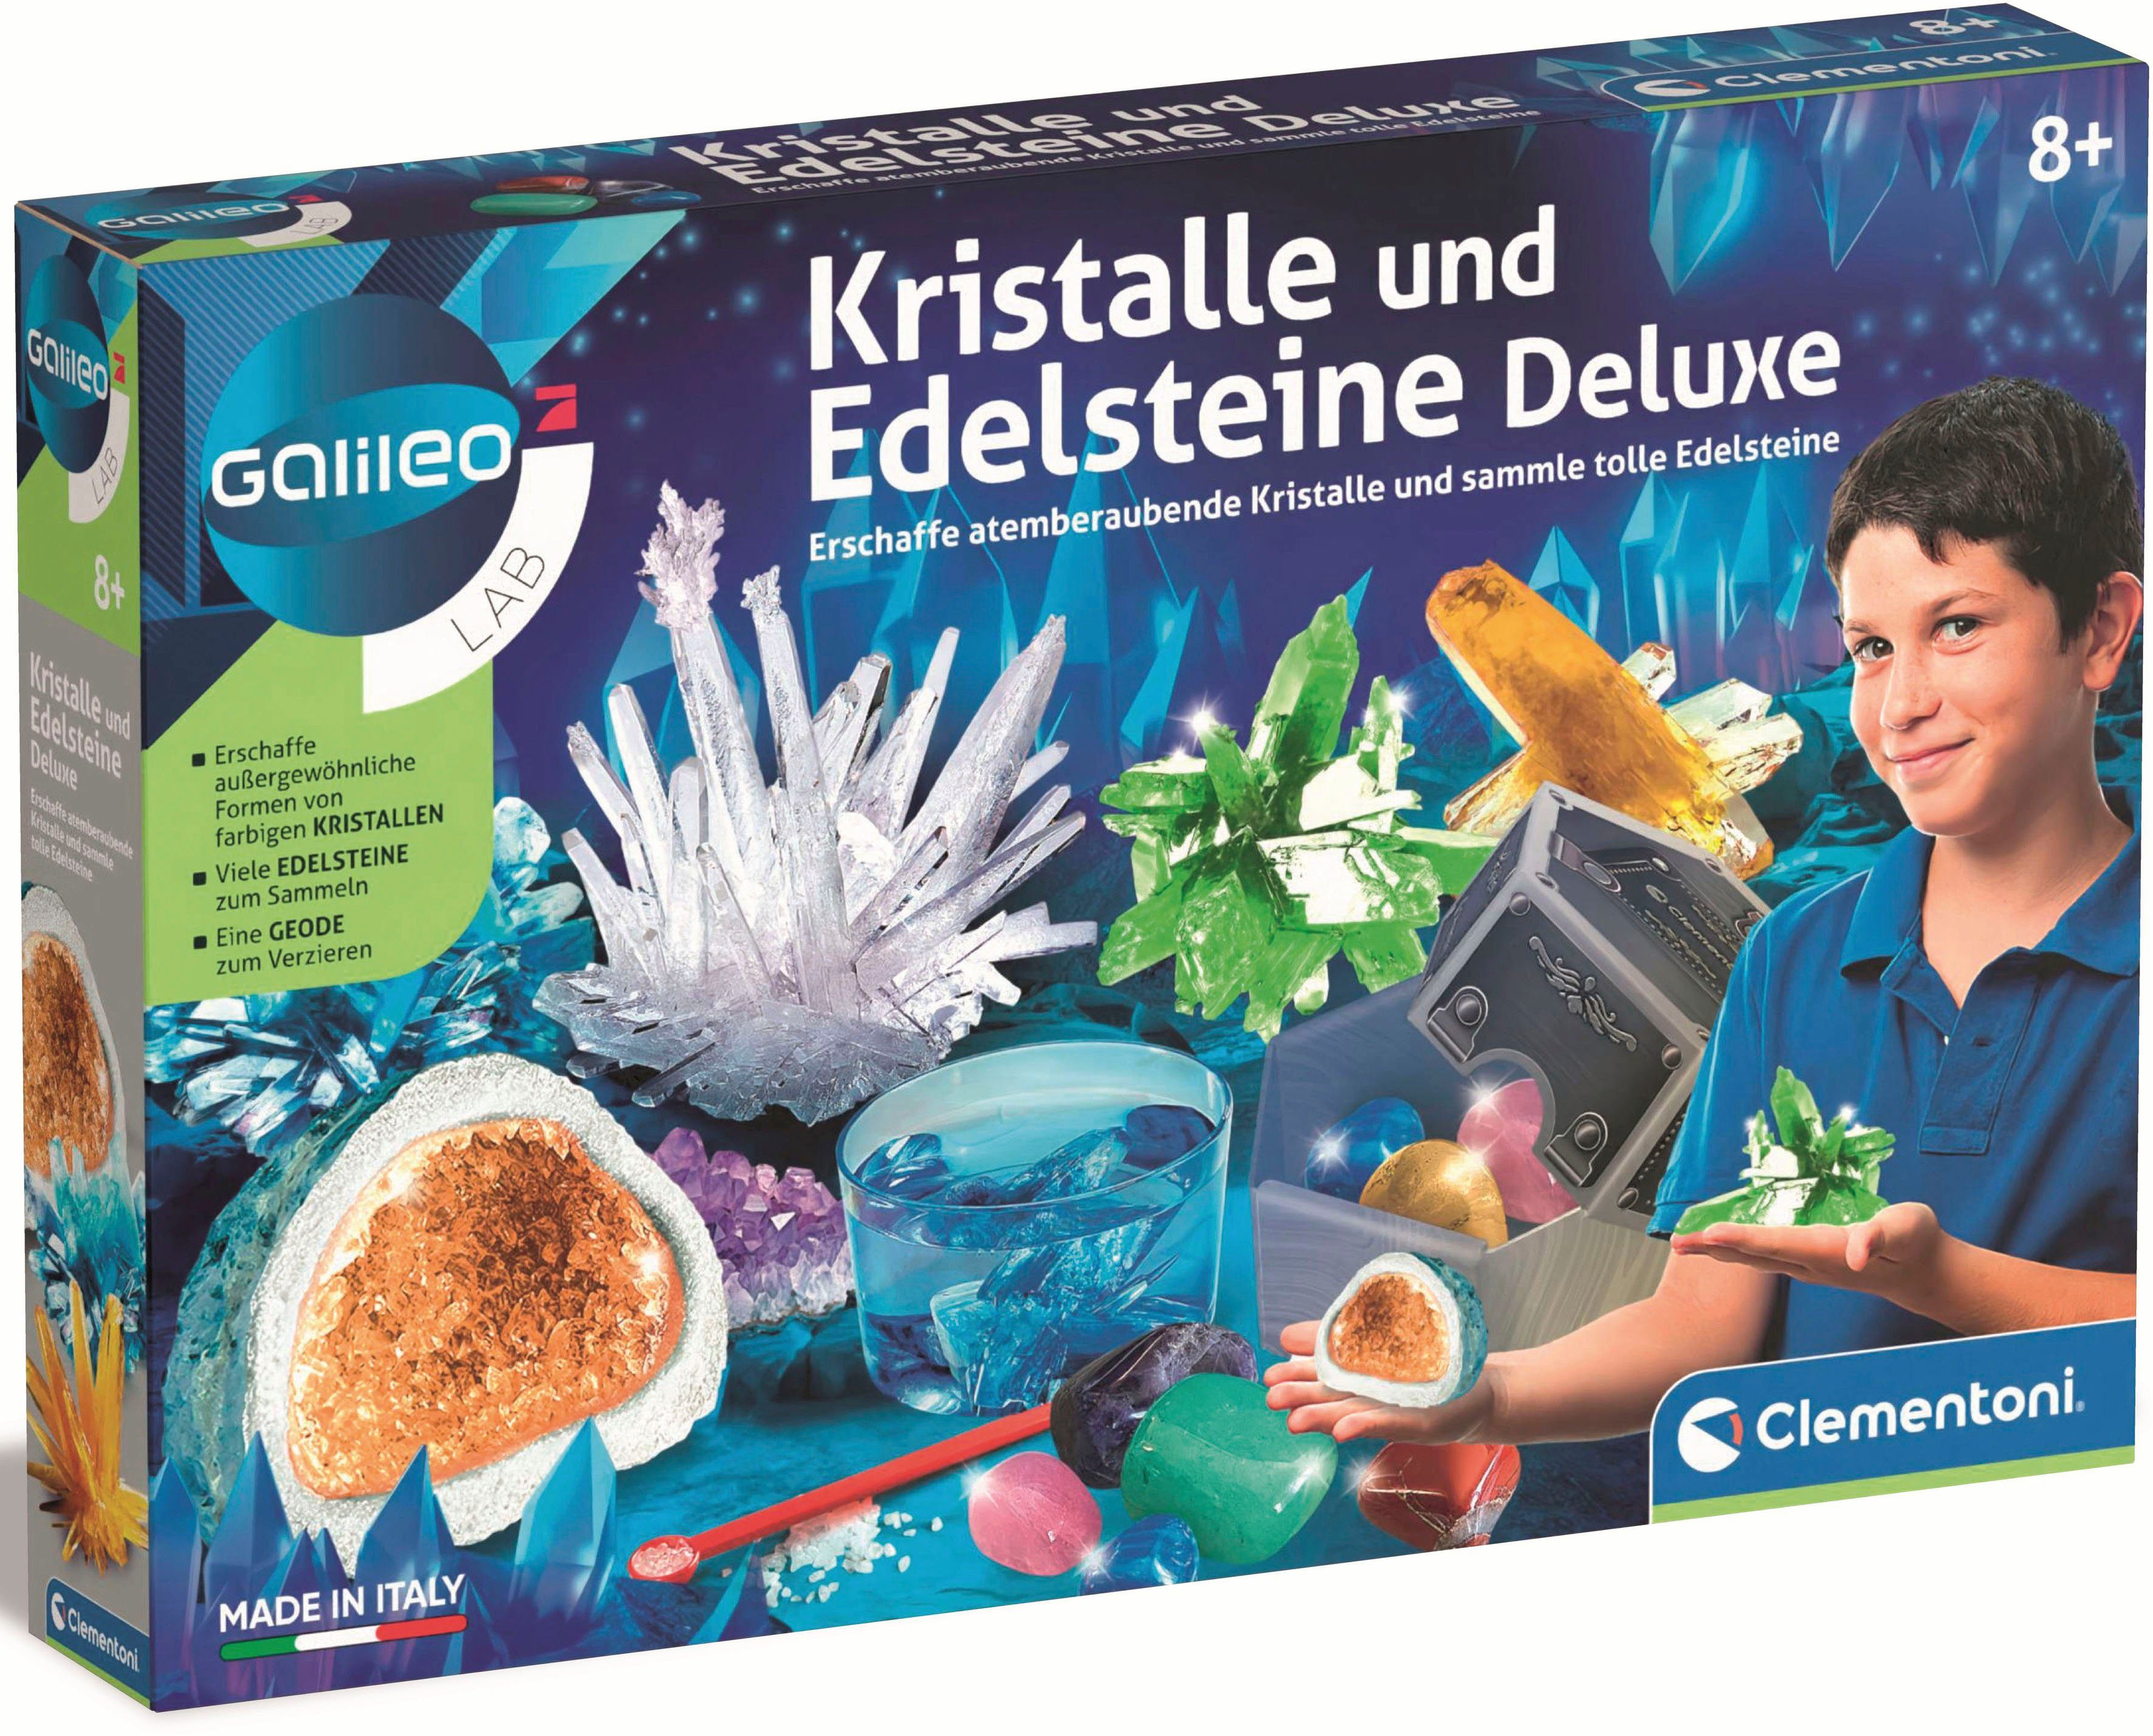 Clementoni® Deluxe, und Kristalle Made in Experimentierkasten Europe Edelsteine Galileo,